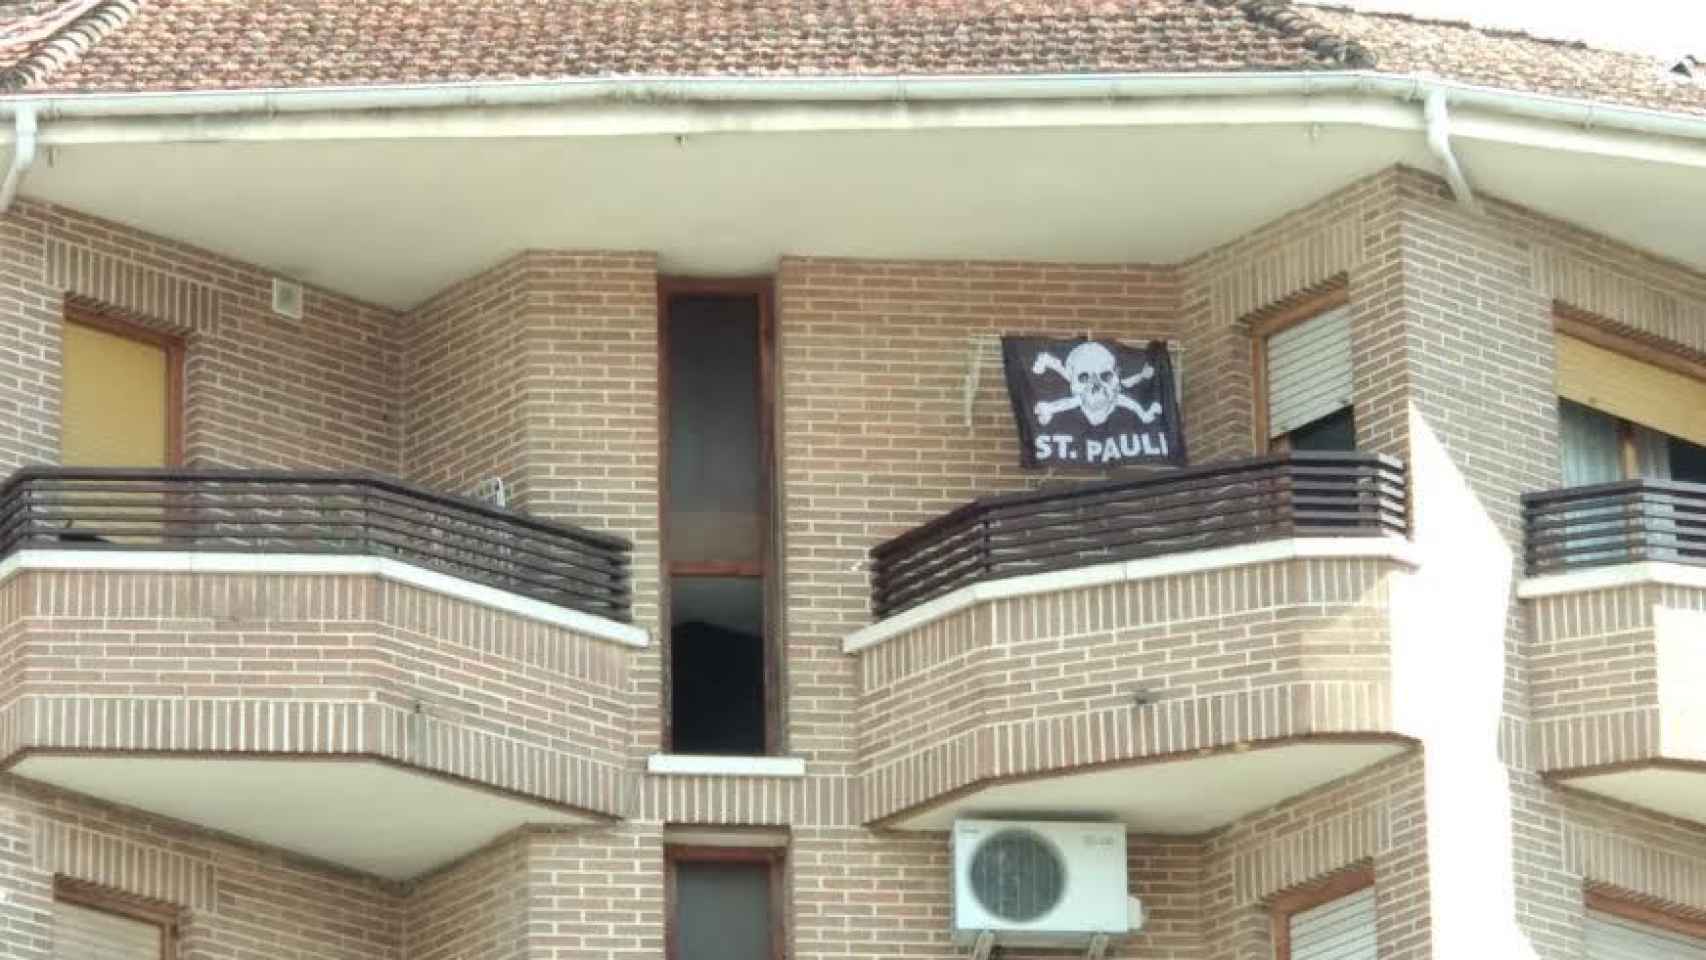 El principal sospechoso reconoce que sufre adicción al hachís y que su ideología es de extrema izquierda. En la terraza de su casa luce la bandera del equipo alemán del que es forofo.